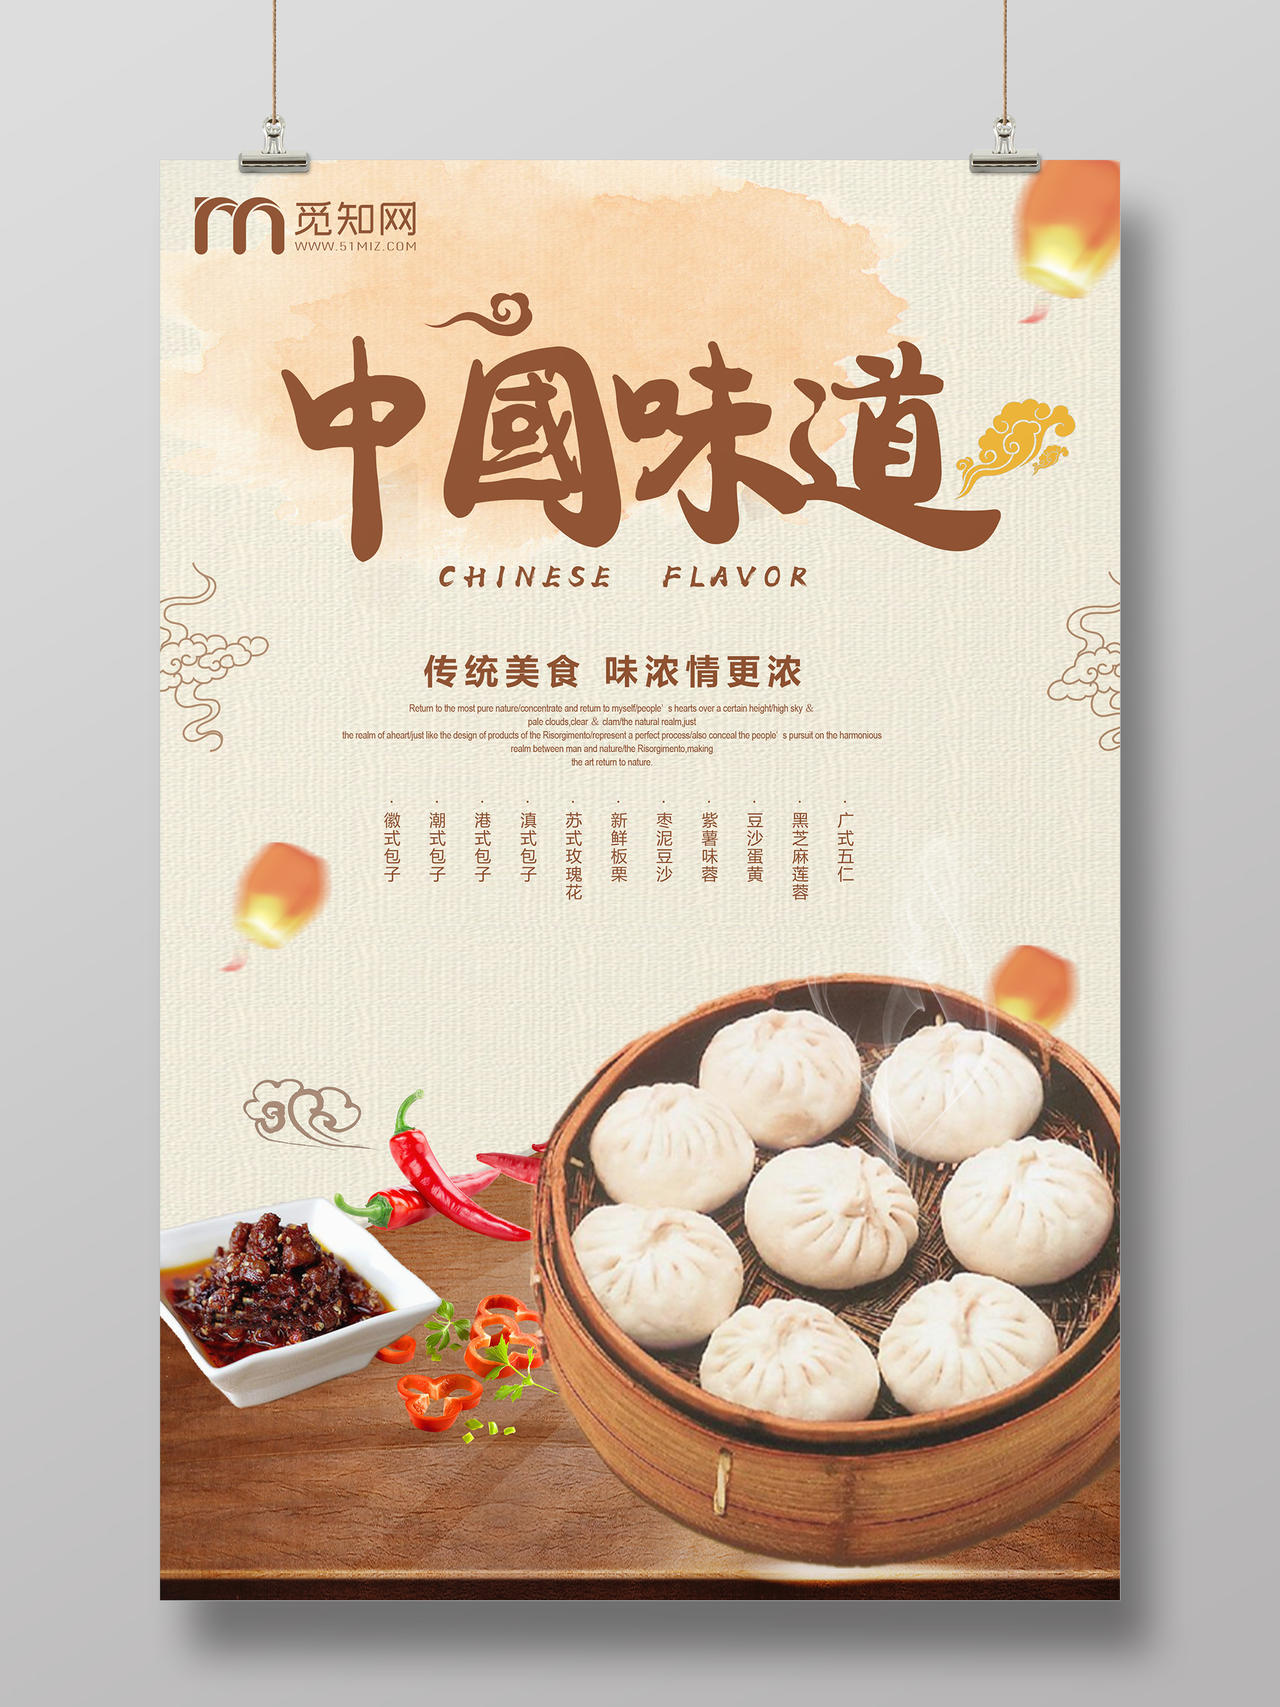 复古中国风中国味道小笼包早餐美食宣传海报